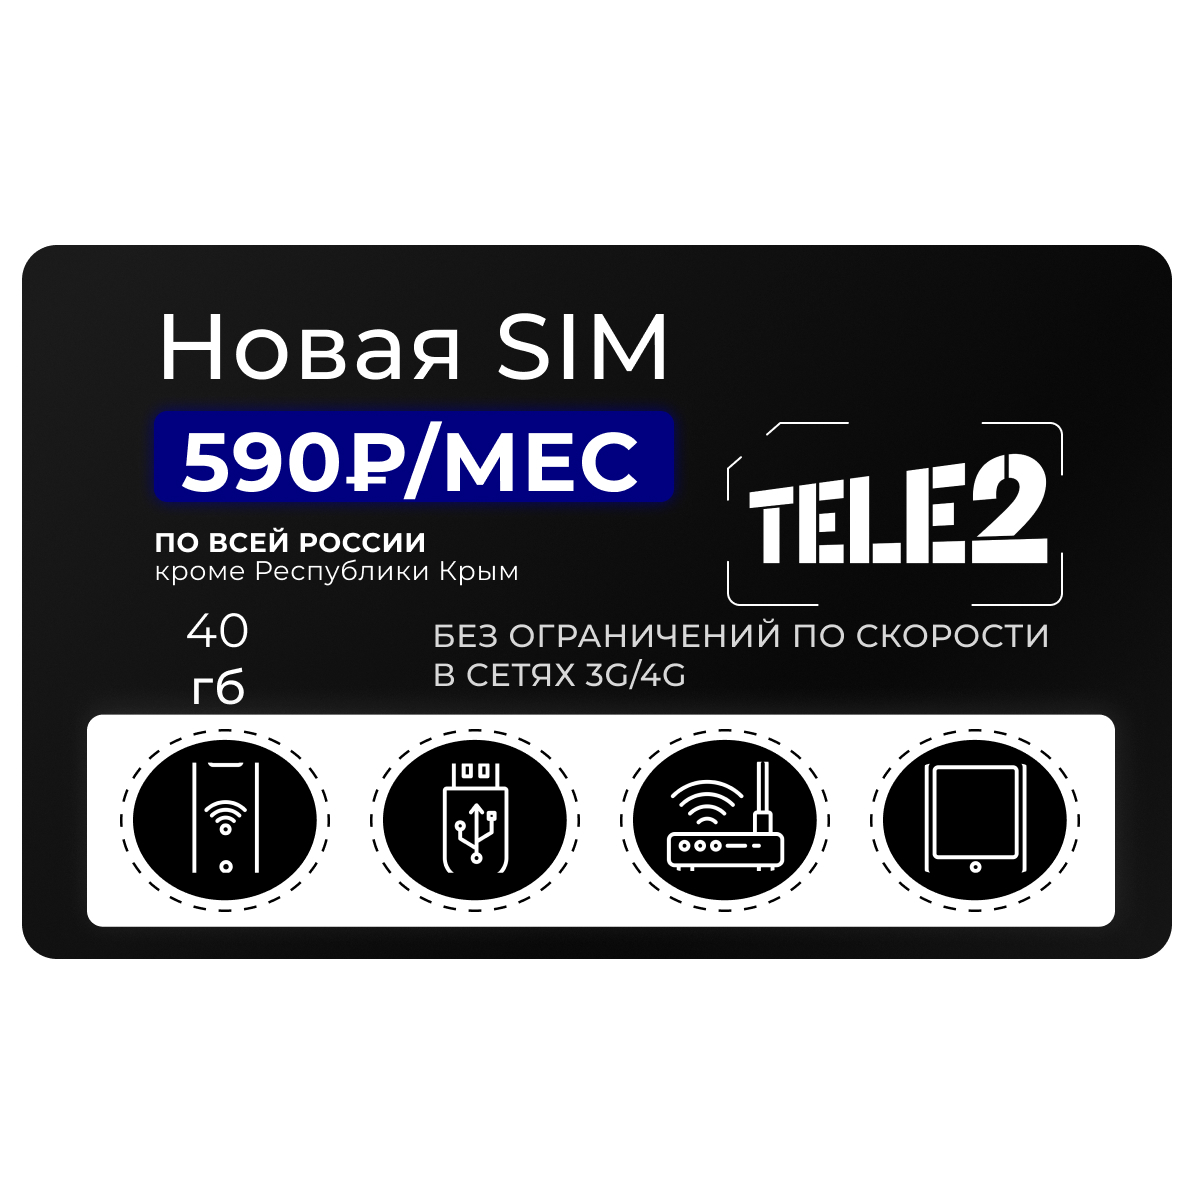 Что делать, если телефон не видит SIM-карту Tele2